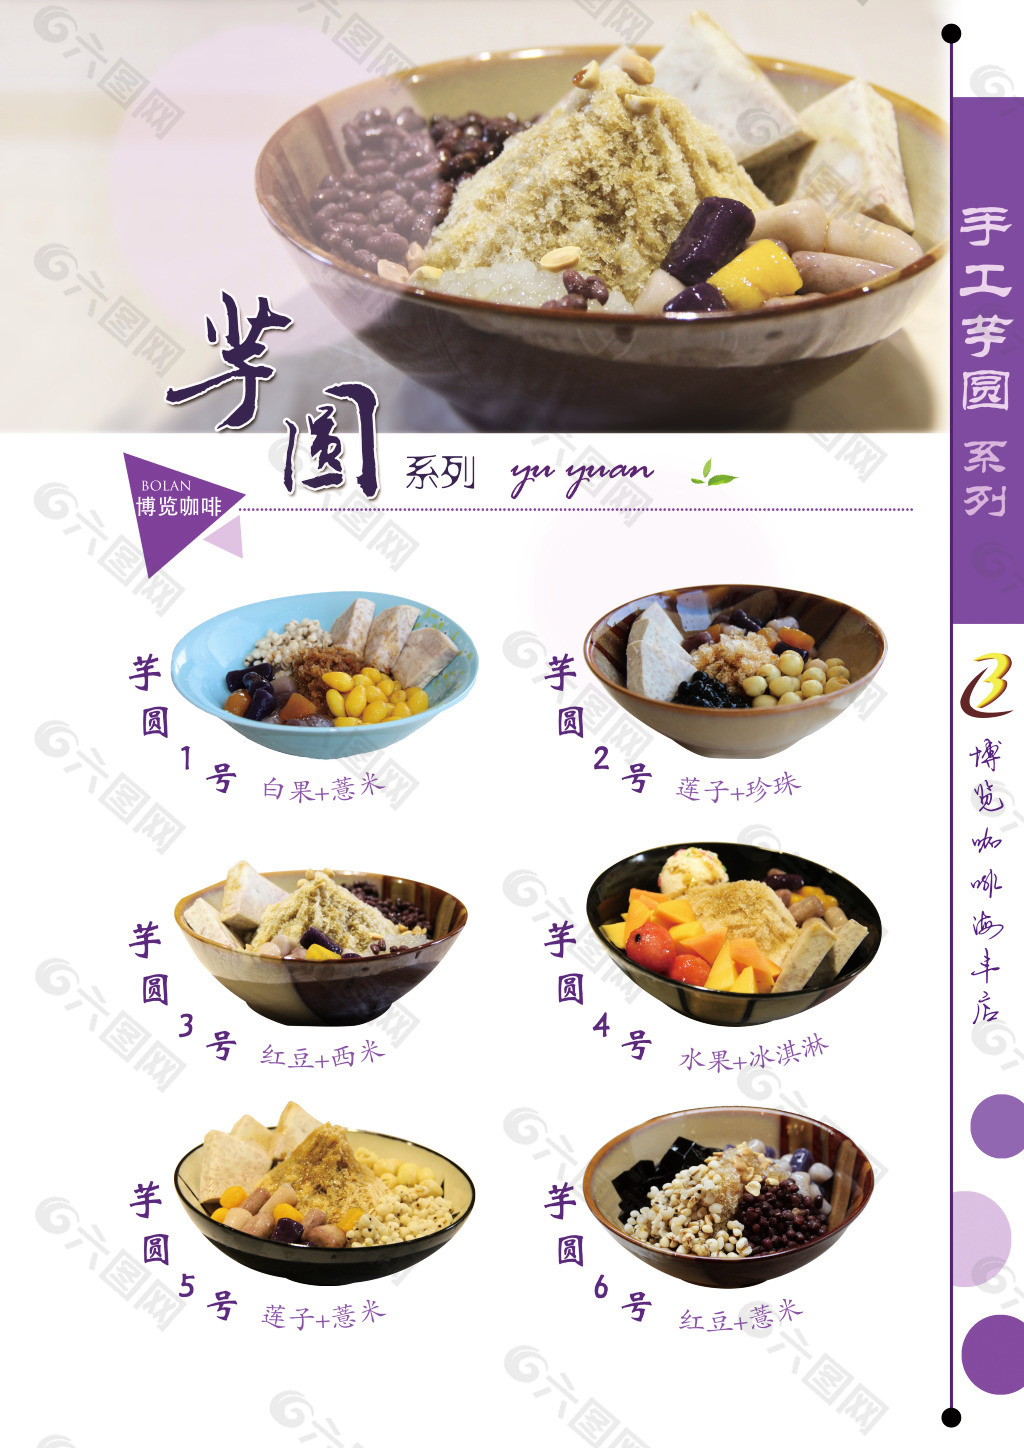 芋圆系列高清餐牌菜单设计